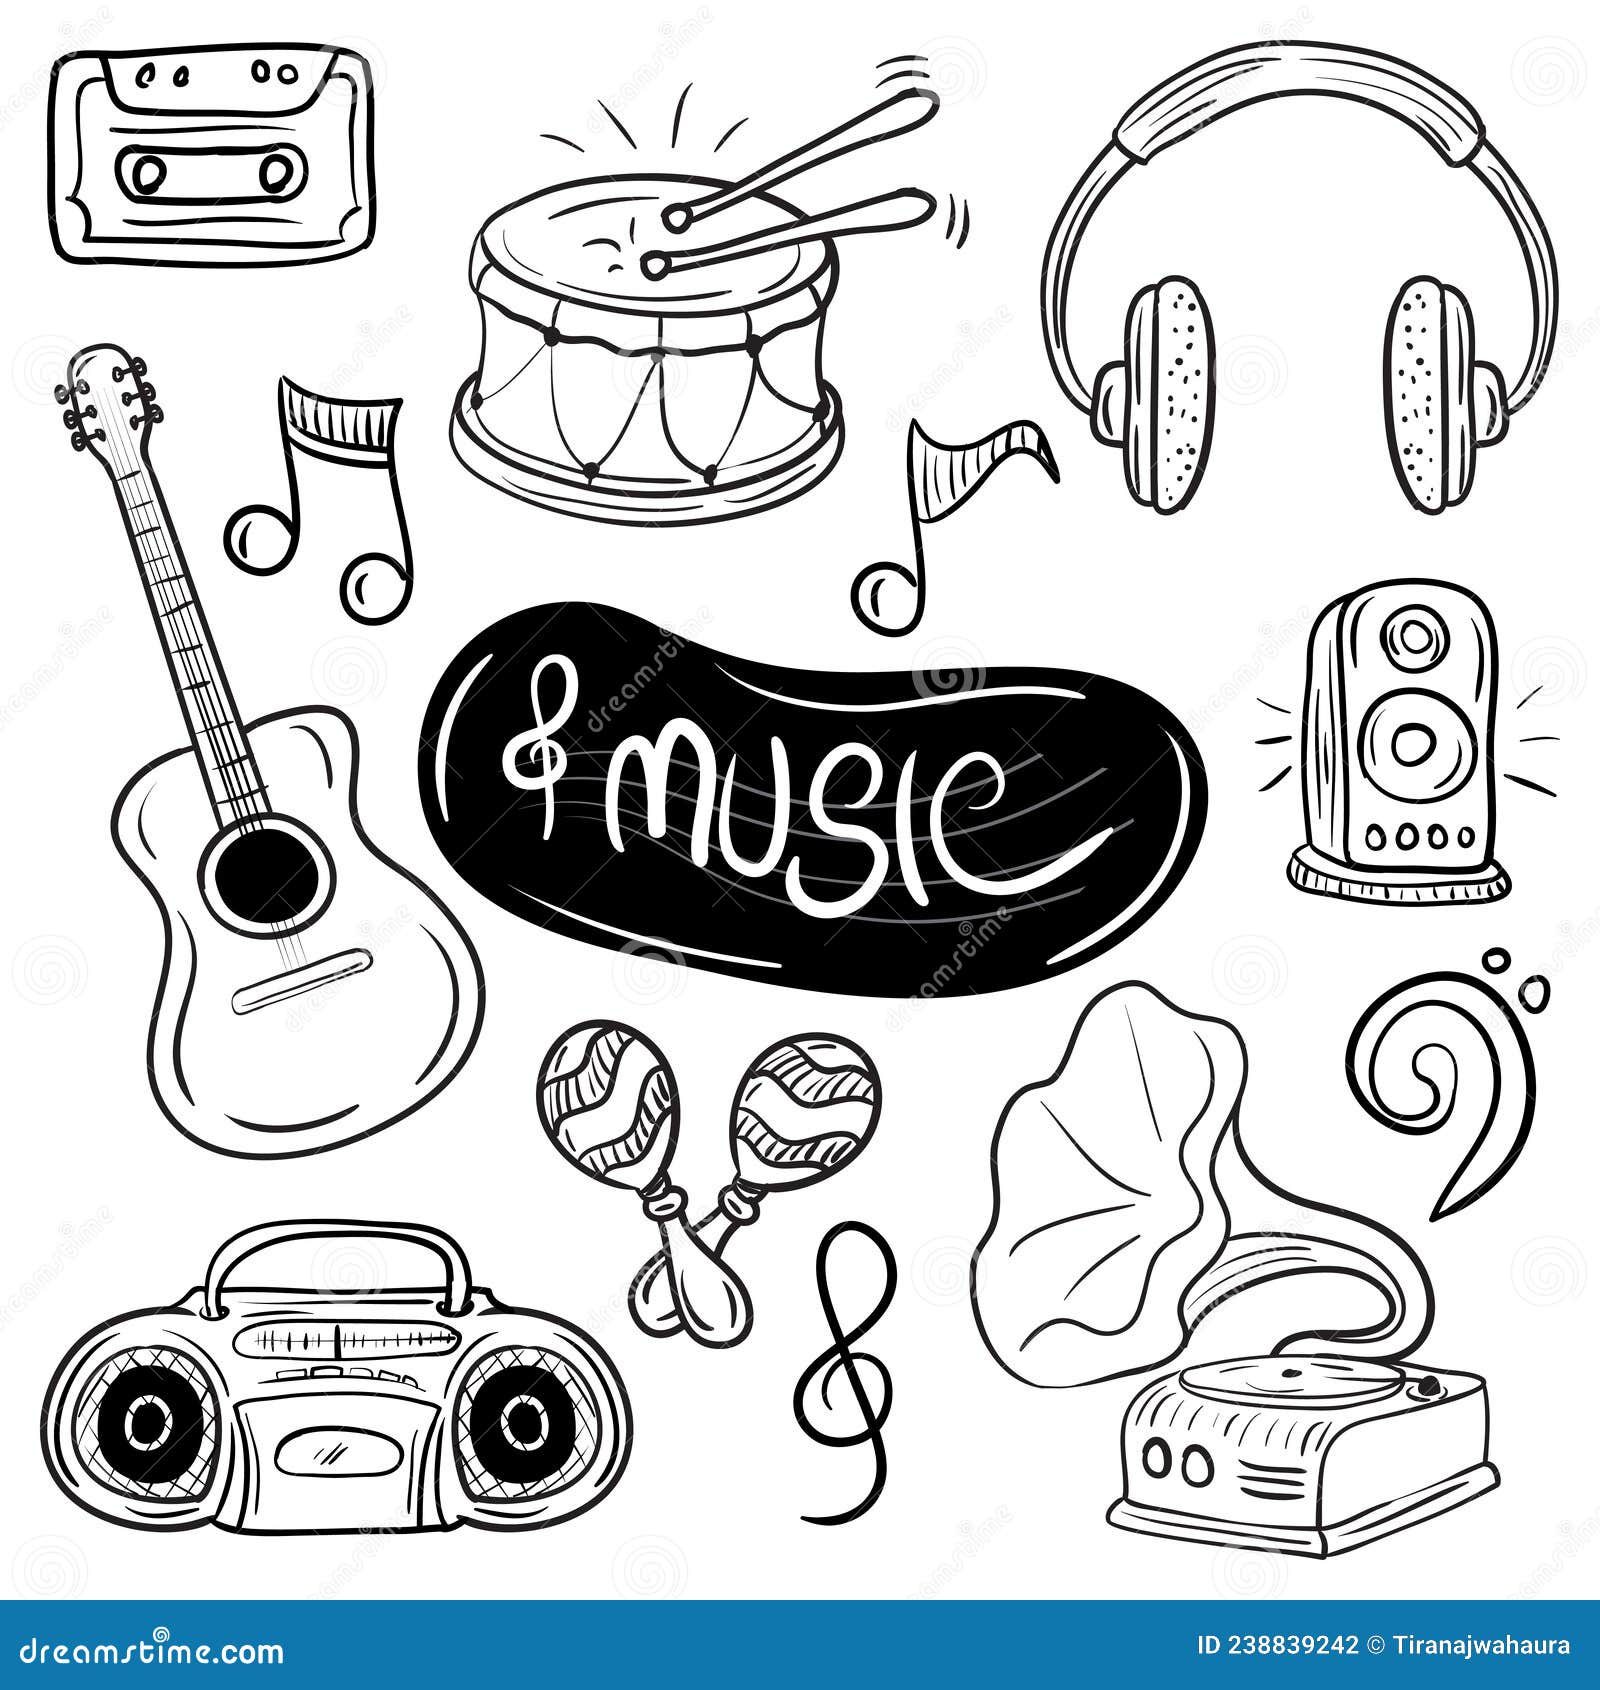 Ilustração Mão Jogar Música No Telefone Móvel Royalty Free SVG, Cliparts,  Vetores, e Ilustrações Stock. Image 169640396